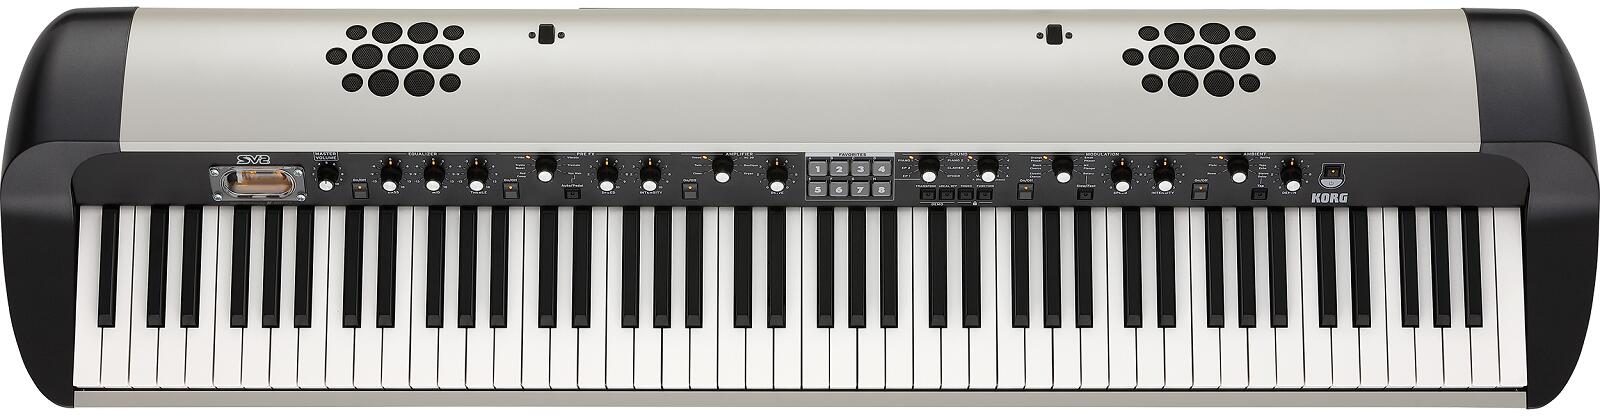 ステージ・ビンテージ・ピアノの新定義。 SV-2ステージ・ビンテージ・ピアノは、様々なキーボードの名機による個性的なサウンド、ユニークな演奏体験、その美しさまで、すべてを1台で満たす唯一無二の存在です。10年前、コルグはこのシリーズを立ち上げました。直感的な操作パネル、最高の鍵盤、極上のビンテージ・サウンド、世界的なピアノの透明感、その時代の暖かみを持つエフェクト、そしてひと目でわかる丸みを帯びたデザインは、多くのミュージシャンを刺激し、10年経った現在でも世界中で使われています。 88鍵、73鍵をラインナップしたSV-2は、このシリーズをさらに優れたものにする機能のアップデート版です。より多くのサウンド、PCM、発音数、プリセット数、コントロールを搭載し、現代のパフォーマンス・ステージ・ピアノに必要な全てを網羅。さらにアンプ＋スピーカー搭載モデルSV-2Sを追加し、新たな可能性も追求しました。次の10年を見据えたシリーズ第二章へ。ステージ・ビンテージ・ピアノ、SV-2S。 妥協なく、もっと高みへ SV-2には、SV-1のサンプル・データの約10倍以上を内蔵しており、全く新しくより高品位なピアノおよびキーボード・サウンドを提供します。SV-2には72のファクトリー・サウンドがあり、パフォーマンス中にすぐにアクセスできるようお気に入りを保存するための64のフェイバリット・ボタンを用意。SV-2 Editorソフトウェアを使用すると、ユーザーはスプリットおよびレイヤー・プログラムを作成可能で、フェイバリットに保存できます。これを使うと弦とレイヤーで重ねたピアノ＋ベースなど、一度に最大3つの音色にアクセスできます。ユーザー・スプリットはSV-2 Editorを使用して作成する必要がありますが、キーボードのスプリット・ポイントはフロント・パネルから直接調整できます。 さらに、SV-2のポリフォニーは128ボイスになり、ピアノとストリングスを重ねたようなレイヤー・サウンドで、ペダルを用いた演奏時でも音切れの心配はありません。 すべては忠実な再現のため SV-2は最高峰のオーディオ・サンプリング技術を用いて、厳選されたクラシック・キーボードのサウンドを正確かつ忠実に再現しています。メンテナンスの行き届いた楽器と最新のマルチ・マイク方式のみを使用して、タインのスラップ、ハンマーのリリース、接点のクリックなど、すべてのサウンドを可能な限り正確に収録しました。これらの様々な要素を必要なだけ混ぜ合わせ、さらに各楽器の完全なダイナミック。レンジを忠実に保持することによって、ppp（ピアニッシシモ）タッチからfff（フォルティシシモ）ストライクまでのあらゆる音色と音量の変化、およびその間のすべてを再現しました。この緻密なサンプリング方式により、3次元の存在感が生まれ、レコーディングやステージにおける完璧なサウンドを得ることができるのです。 憧れのクラシック・サウンド すべてが驚くほどリアルに再現されている、古典的な電気機械式、トランジスタ式、テープ駆動式、アナログ、デジタル・キーボードなどなど、楽器の宝庫を体験してください。これらのサウンドは過去数十年もの間、ポピュラー音楽を定義し、今再び脚光を浴びています。 SV-2は、これらの求められているすべてのサウンドを、完璧なチューニングと申し分のない演奏状態で、指先に配置します。もちろんメンテナンスは不要で、すべてがここにあります。エレクトリック・ピアノには、ほぼすべてのアメリカ製タイン・モデルとリード・モデル、日本のエレクトリック・グランド、珍しいドイツのエレクトリック・ピアノも含まれています。そして、さまざまな設定を使用して作成されたクラビがあります。電子ピアノはお好きですか？アナログ、デジタル（VPM、FM、およびPCMバージョン）があり、人気の高いKORG M1ピアノも含まれます。オルガンをお探しですか？トーン・ホイールのクラシックから、 VOXコンボ、イタリアのトランジスタ、またはアメリカの真空管式オルガン、そして教会と大聖堂のオルガン。ストリングスは必要ですか？ 70年代のアナログ・ストリング・マシン、プログレ時代のテープ・ストリング、オーケストラのセクションなどから選べます。さらにSV-2にはマレット、ブラスやコーラスのサウンド、ギターとベースのサウンド、ソロやパッドのシンセも含まれており、スプリット、レイヤーの作成にも最適です。 美しいピアノ・サウンド SV-2はステージ・ピアノです。 ボタンを押すだけでドイツ、イタリア、オーストリア、日本の著名なピアノなど、世界中の最も優れたグランド・ピアノ・サウンドを呼び出すことができます。普段から馴染みのあるサウンドでしたら、日本またはドイツのアップライト・ピアノを選択してください。 本物のホンキー・トンク・ピアノと本物の「タック」ピアノも含まれています。 SV-2には2つのゴージャスなハープシコード、1つはフランス製、もう1つはイタリア製のものです。 ピアノを単音で使用するか、別のサウンドとレイヤー化するか。これらの優れたピアノ・サウンドは、音楽の強力な基幹となることと同時に、様々なパフォーマンスの可能性も提供します。 ノブやスイッチによる直感的な操作 SV-2では、あなたがサウンドの主導権を握ることをお勧めします。LCD表示もメニューもありません。すぐに理解できる操作パネルは常に現在の状態を示しているので、思うままに先に進んでください。ノブをつかみ、回転させ、微調整し、色々試してください。もし気が変わったら、ノブを押せば、元の値に素早く戻ります。LEDインジケータ付きのスイッチは、どの効果がアクティブであるか、変化したか、などを示します。サウンドは2つのロータリー・スイッチで選択可能。パネルの中央にある8つのボタンは、64個のフェイバリットのプリセットをすばやく呼び出すことができ、各プリセットには独自のカスタマイズされたサウンドと設定が含まれています。また誤って音が切り替わるのを防ぐパネルロック機能があり、演奏中の誤操作を防ぎます。 より詳細なサウンドやフェイバリットの設定、およびこれらのデータ管理は、無料のSV-2 Editorソフトウェアによって可能になります。 繊細なニュアンスを表現するRH3鍵盤 SV-2の鍵盤は73 key、88 keyともにリアル・ウェイテッド・ハンマー・アクション3（RH3）鍵盤を採用。グランド・ピアノと同様、低音部では重く、高音部では軽くなるように4段階に重さを分けた鍵盤で、指先の繊細なニュアンスまでも見事に表現し、リアルな弾き心地を楽しむことができます。また、打鍵の強弱による音色の違いを、8種類のタッチ・カーブから選択することができます。すべてが忠実なSV-2は、グランド・ピアノやエレクトリック・ピアノに適合した、2つのユーザー定義可能なタイプ（SV-2 Editorを使用して作成可能）を含む8つのチューニング・カーブも提供。SV-2の全体的なチューニング、つまりコンサート・ピッチは、別の楽器または以前に録音したトラックに合わせて調整できます。 リアルさを追求したエフェクト 適切なエフェクトをかけることで、サウンドに素晴らしい立体感が加わり、ビンテージ・キーボード・サウンドを最高レベルに引き上げます。SV-2には、スタジオ品位の信号処理による6つの独立したエフェクト・ステージに加えて、コルグ独自の真空管回路「Valve Reactor」を搭載。このValve Reactor回路は、本物の12AX7A真空管だけが付加することができる暖かみ、歪みを加えます。サウンドと同様、エフェクト・モデルはすべてオリジナルに忠実であり、選択したエフェクトのパフォーマンス、動作などが本物と一致するように設計されています。エフェクトステージは以下の通りです。 - 3-BAND EQUALIZER（ベース、ミドル、トレブル） - PRE FX（Red Compressor、Treble Boost、U-Vibe、Vibrato、Tremolo、VOX Wah） - AMPモデル（クリーン、ツイン、ツイード、AC30、ブティック、オルガン、およびいくつかのキャビネット・シミュレーターとノイズ・リダクション） - MODULATION FX（クラシック・コーラス、ブラック・コーラス、オレンジ・フェイザー、スモール・フェイザー、MXフランジャー、ロータリー） - リバーブ/ディレイ（ルーム、プレート、ホール、スプリング、テープ・エコー、ステレオ・ディレイ） - LIMITER（ステレオ・リミッター、ステレオ・マスタリング・リミッター） 制御が簡単で使いやすく、しかも忠実に再現されたエフェクトとアンプ・モデルは、本物のビンテージとモダンなサウンドを追求することに役立つでしょう。 充実したコネクター類 SV-2は、現代のステージ・ピアノに必要なすべてのオーディオ端子、MIDI端子やPC接続端子、およびペダル端子を備えています。1/4インチ・オーディオL/R出力に加えて、ダイレクト・ボックスやインピーダンス・マッチング・トランスを必要とせずに、スタジオ・コンソールまたはステージ上のコネクターに直接接続するためのXLR出力を装備。ヘッドフォン出力は、ステージ上でモニタリングやプライベートでのリハーサルが可能です。DinスタイルのMIDI INおよびMIDI OUTジャックは、他のMIDI楽器や音楽機器に容易に接続可能で、USBポートはSV-2とコンピューター間のデータ転送を行います。またダンパー、ペダル1、ペダル2の3つのペダル端子があります。DS-2Hダンパー・ペダルは同梱されており、本物のピアノ同様にハーフ・ペダルに反応します。ペダル1は、スイッチ・タイプのペダル向けに設計されており、ピアノのソステヌート・ペダルや、Rotary ProエフェクトがオンのときにFast / Slowスイッチとして動作できます。ペダル2は、ワウ・エフェクトやオルガンの正確なボリューム・コントロールに最適なスイープ・タイプのペダル、そしてピアノ奏者には「ウナコルダ」（ソフト・ペダル）によって、ピアノの3本ペダル機能すべてへのアクセスを可能にします。 スピーカー・システムを搭載したSV-2S SV-2のサウンド、ルックス、パフォーマンスをどこでもお楽しみください。コルグはイタリアのスピーカー・デザイナーであるK-ARRAYと協力して、驚くべきSV-2Sを作り上げました。SV-2のすべての機能に加えて、SV-2Sにはスピーカー・システムも組み込まれています。楽屋の舞台裏から寝室まで。ミュージカル、ステージ。ダンスのリハーサルから合唱団のリハーサルまで。 居間からコンサートホール、または礼拝所まで。SV-2Sはいつでもどこでも演奏可能です。15 Wの出力（x 2、左右）を生成するスピーカー・システムには、2つの2.5インチ・スピーカーと3インチのパッシブ・ラジエーターが備わっています。SV-2Sは73鍵と88鍵をラインナップし、個性的なグリルを備えた専用の暖かいアイボリー仕上げで仕上げられています。 ●店舗へのご来店について webご案内の該当商品が店舗に展示していない場合がございますので、店舗ご来店にて商品をご購入・ご確認をご希望の際は事前に店舗あてにご確認ください。 楽器の詳細及び通信販売の手続き方法で不明な点は、 お電話かe-mailにてお問い合わせ下さい。 全国通信販売も承ります。 楽器の詳細及び通信販売の手続き方法は、 お電話かe-mailにてお問い合わせ下さい。 お問い合わせは下記までどうぞ!! クロサワ楽器御茶ノ水駅前店 東京都千代田区神田駿河台2-2-2 TEL 03-3293-5625　